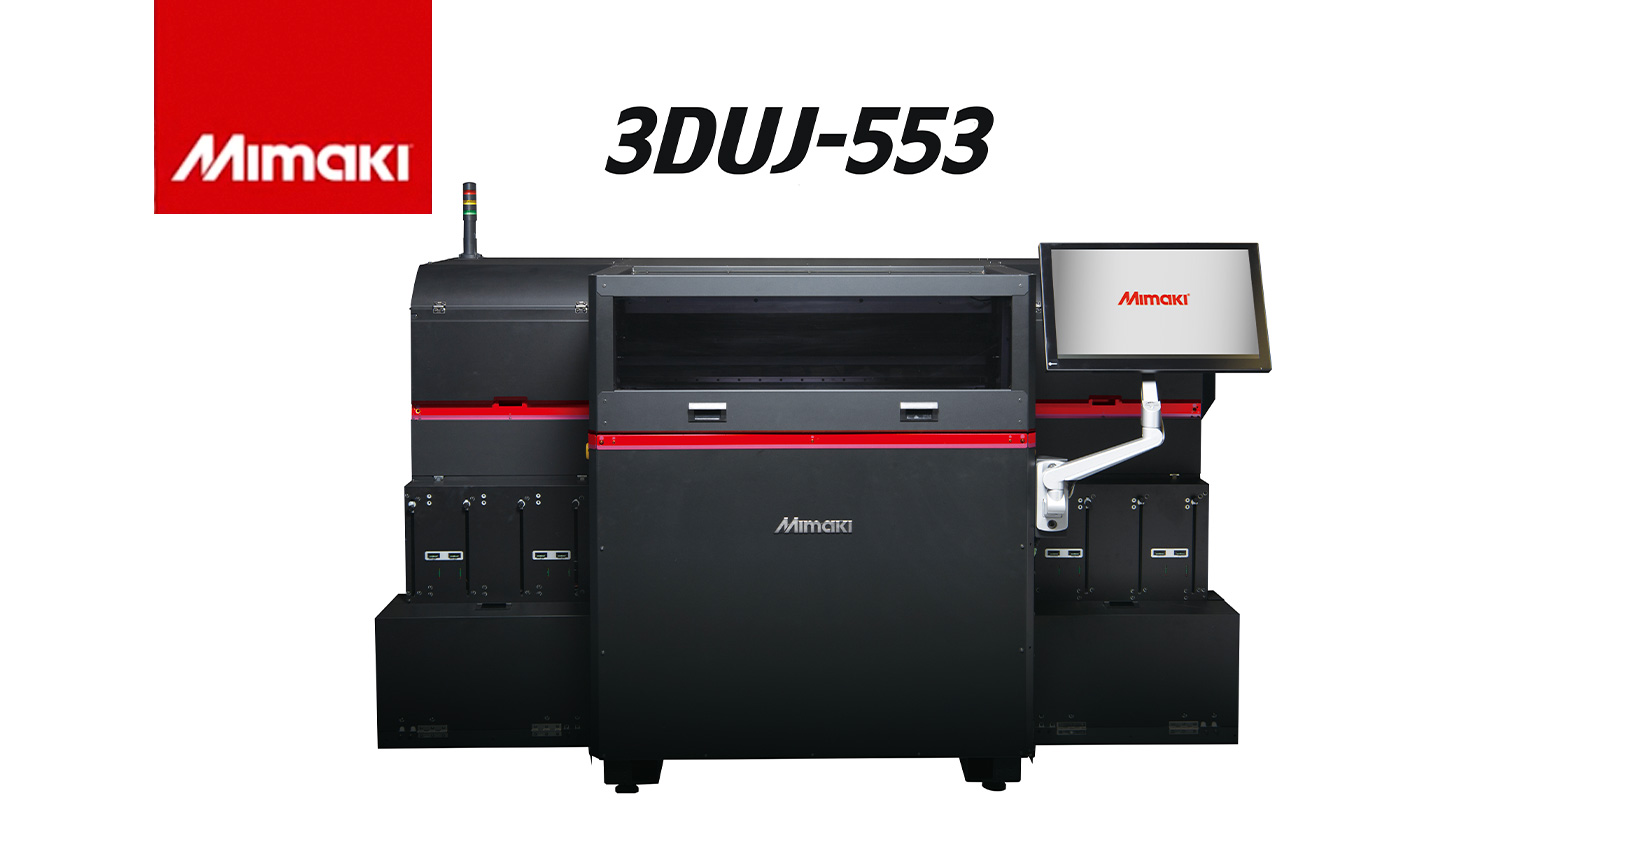 Mimaki 3DUJ-553 Printer